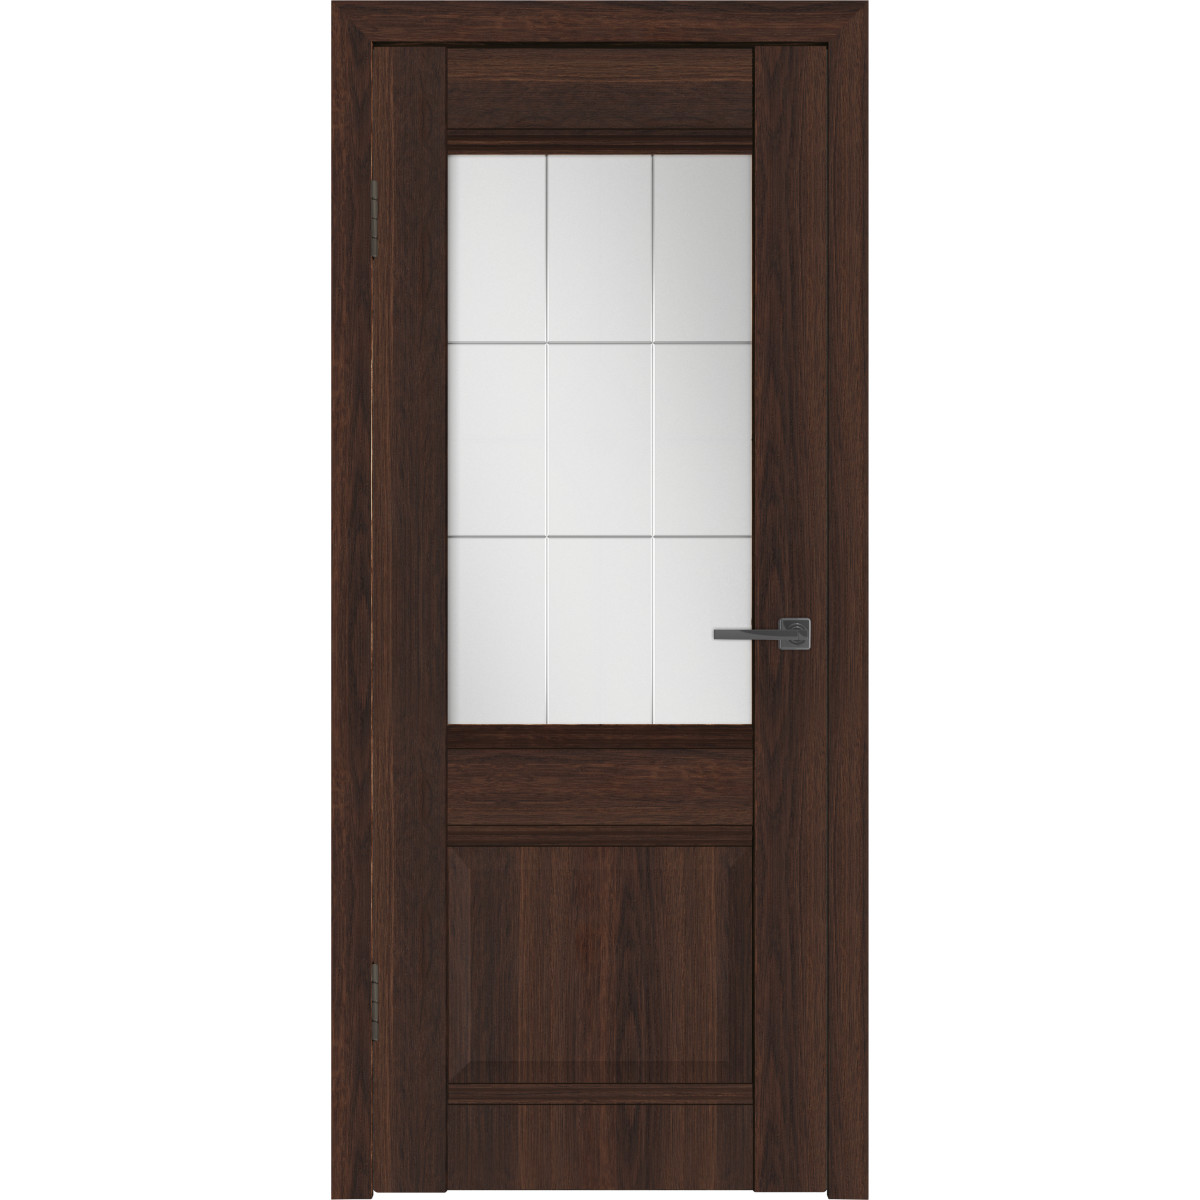 Дверь межкомнатная остекленная с замком и петлями в комплекте Классик 2 60x200 см ПВХ цвет каштан